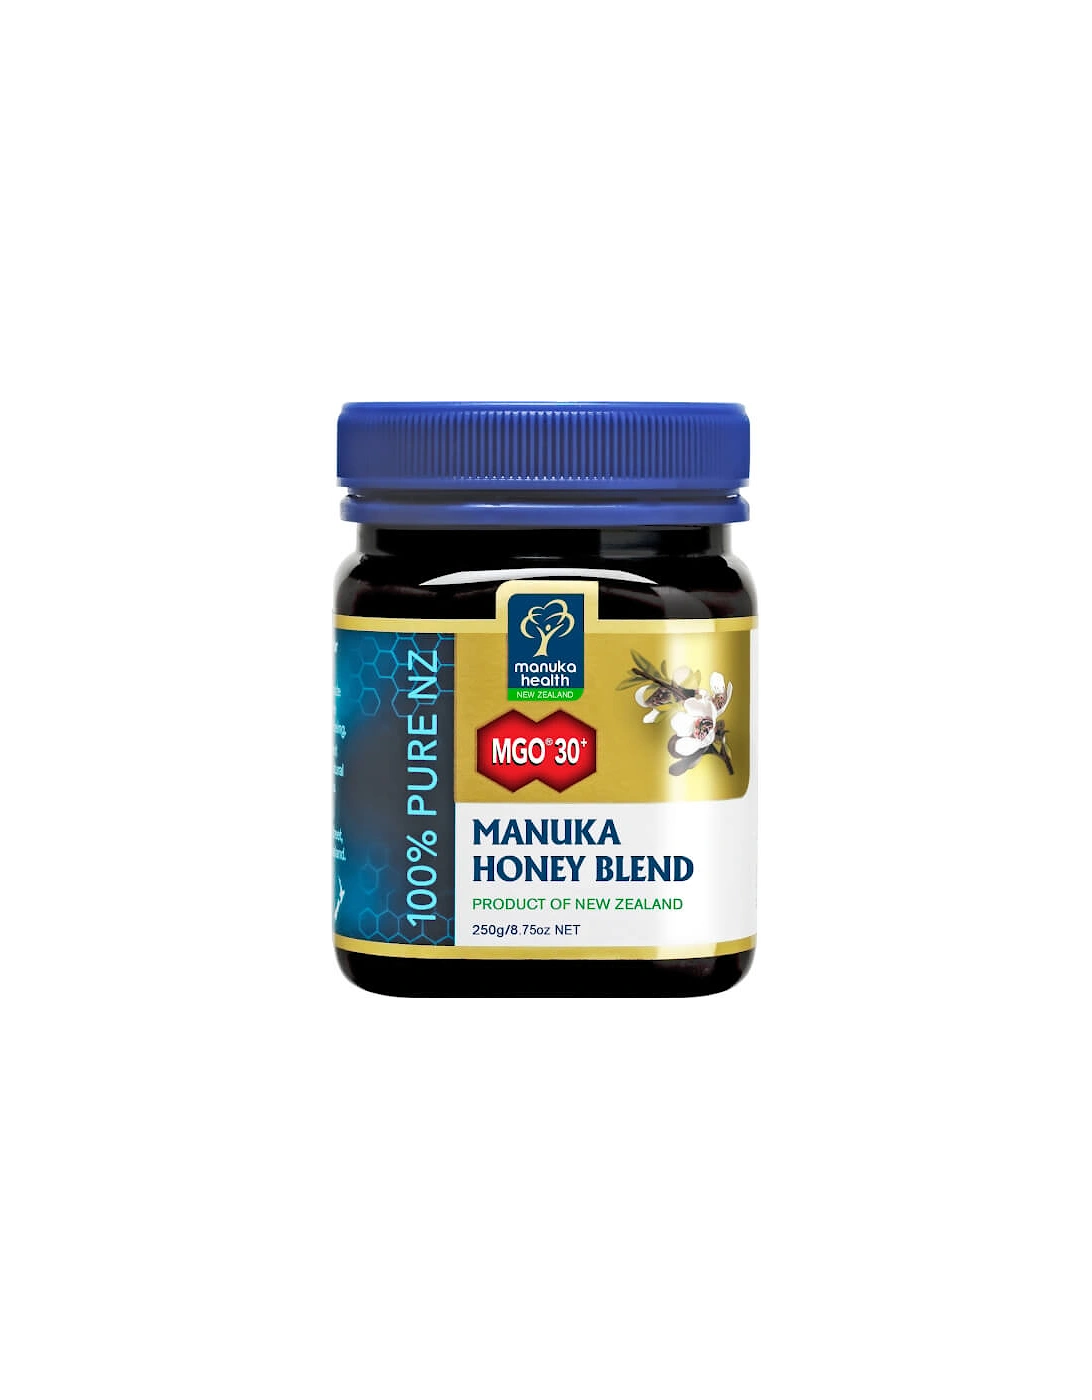 Health MGO 30+ Honey Blend Family Jar 1kg, 2 of 1